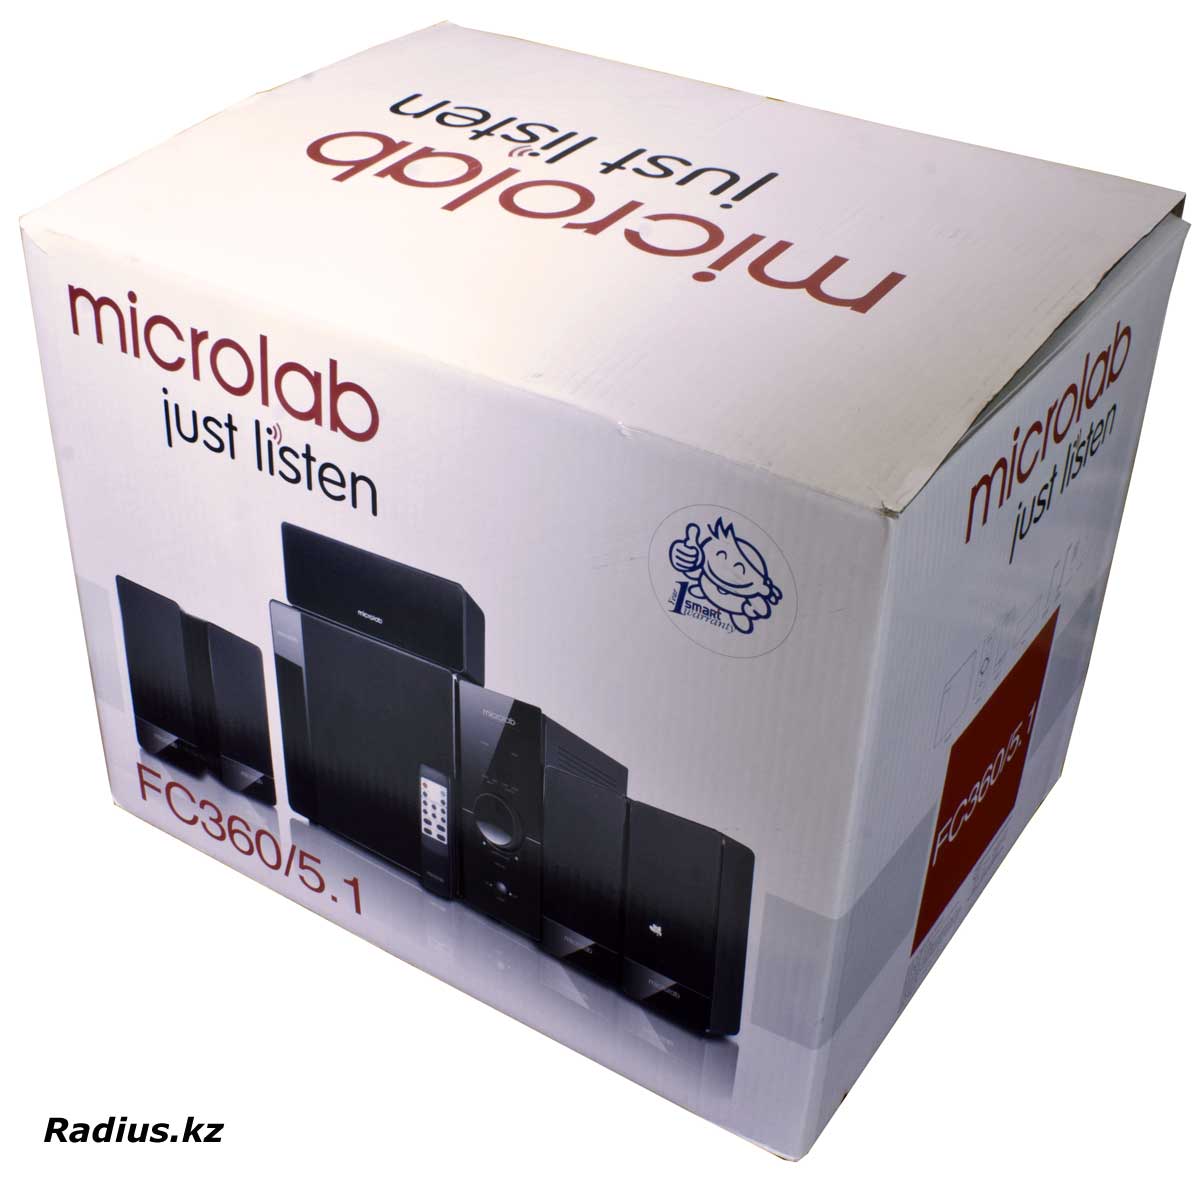 Microlab FC360 акустическая система 5.1 полное описание